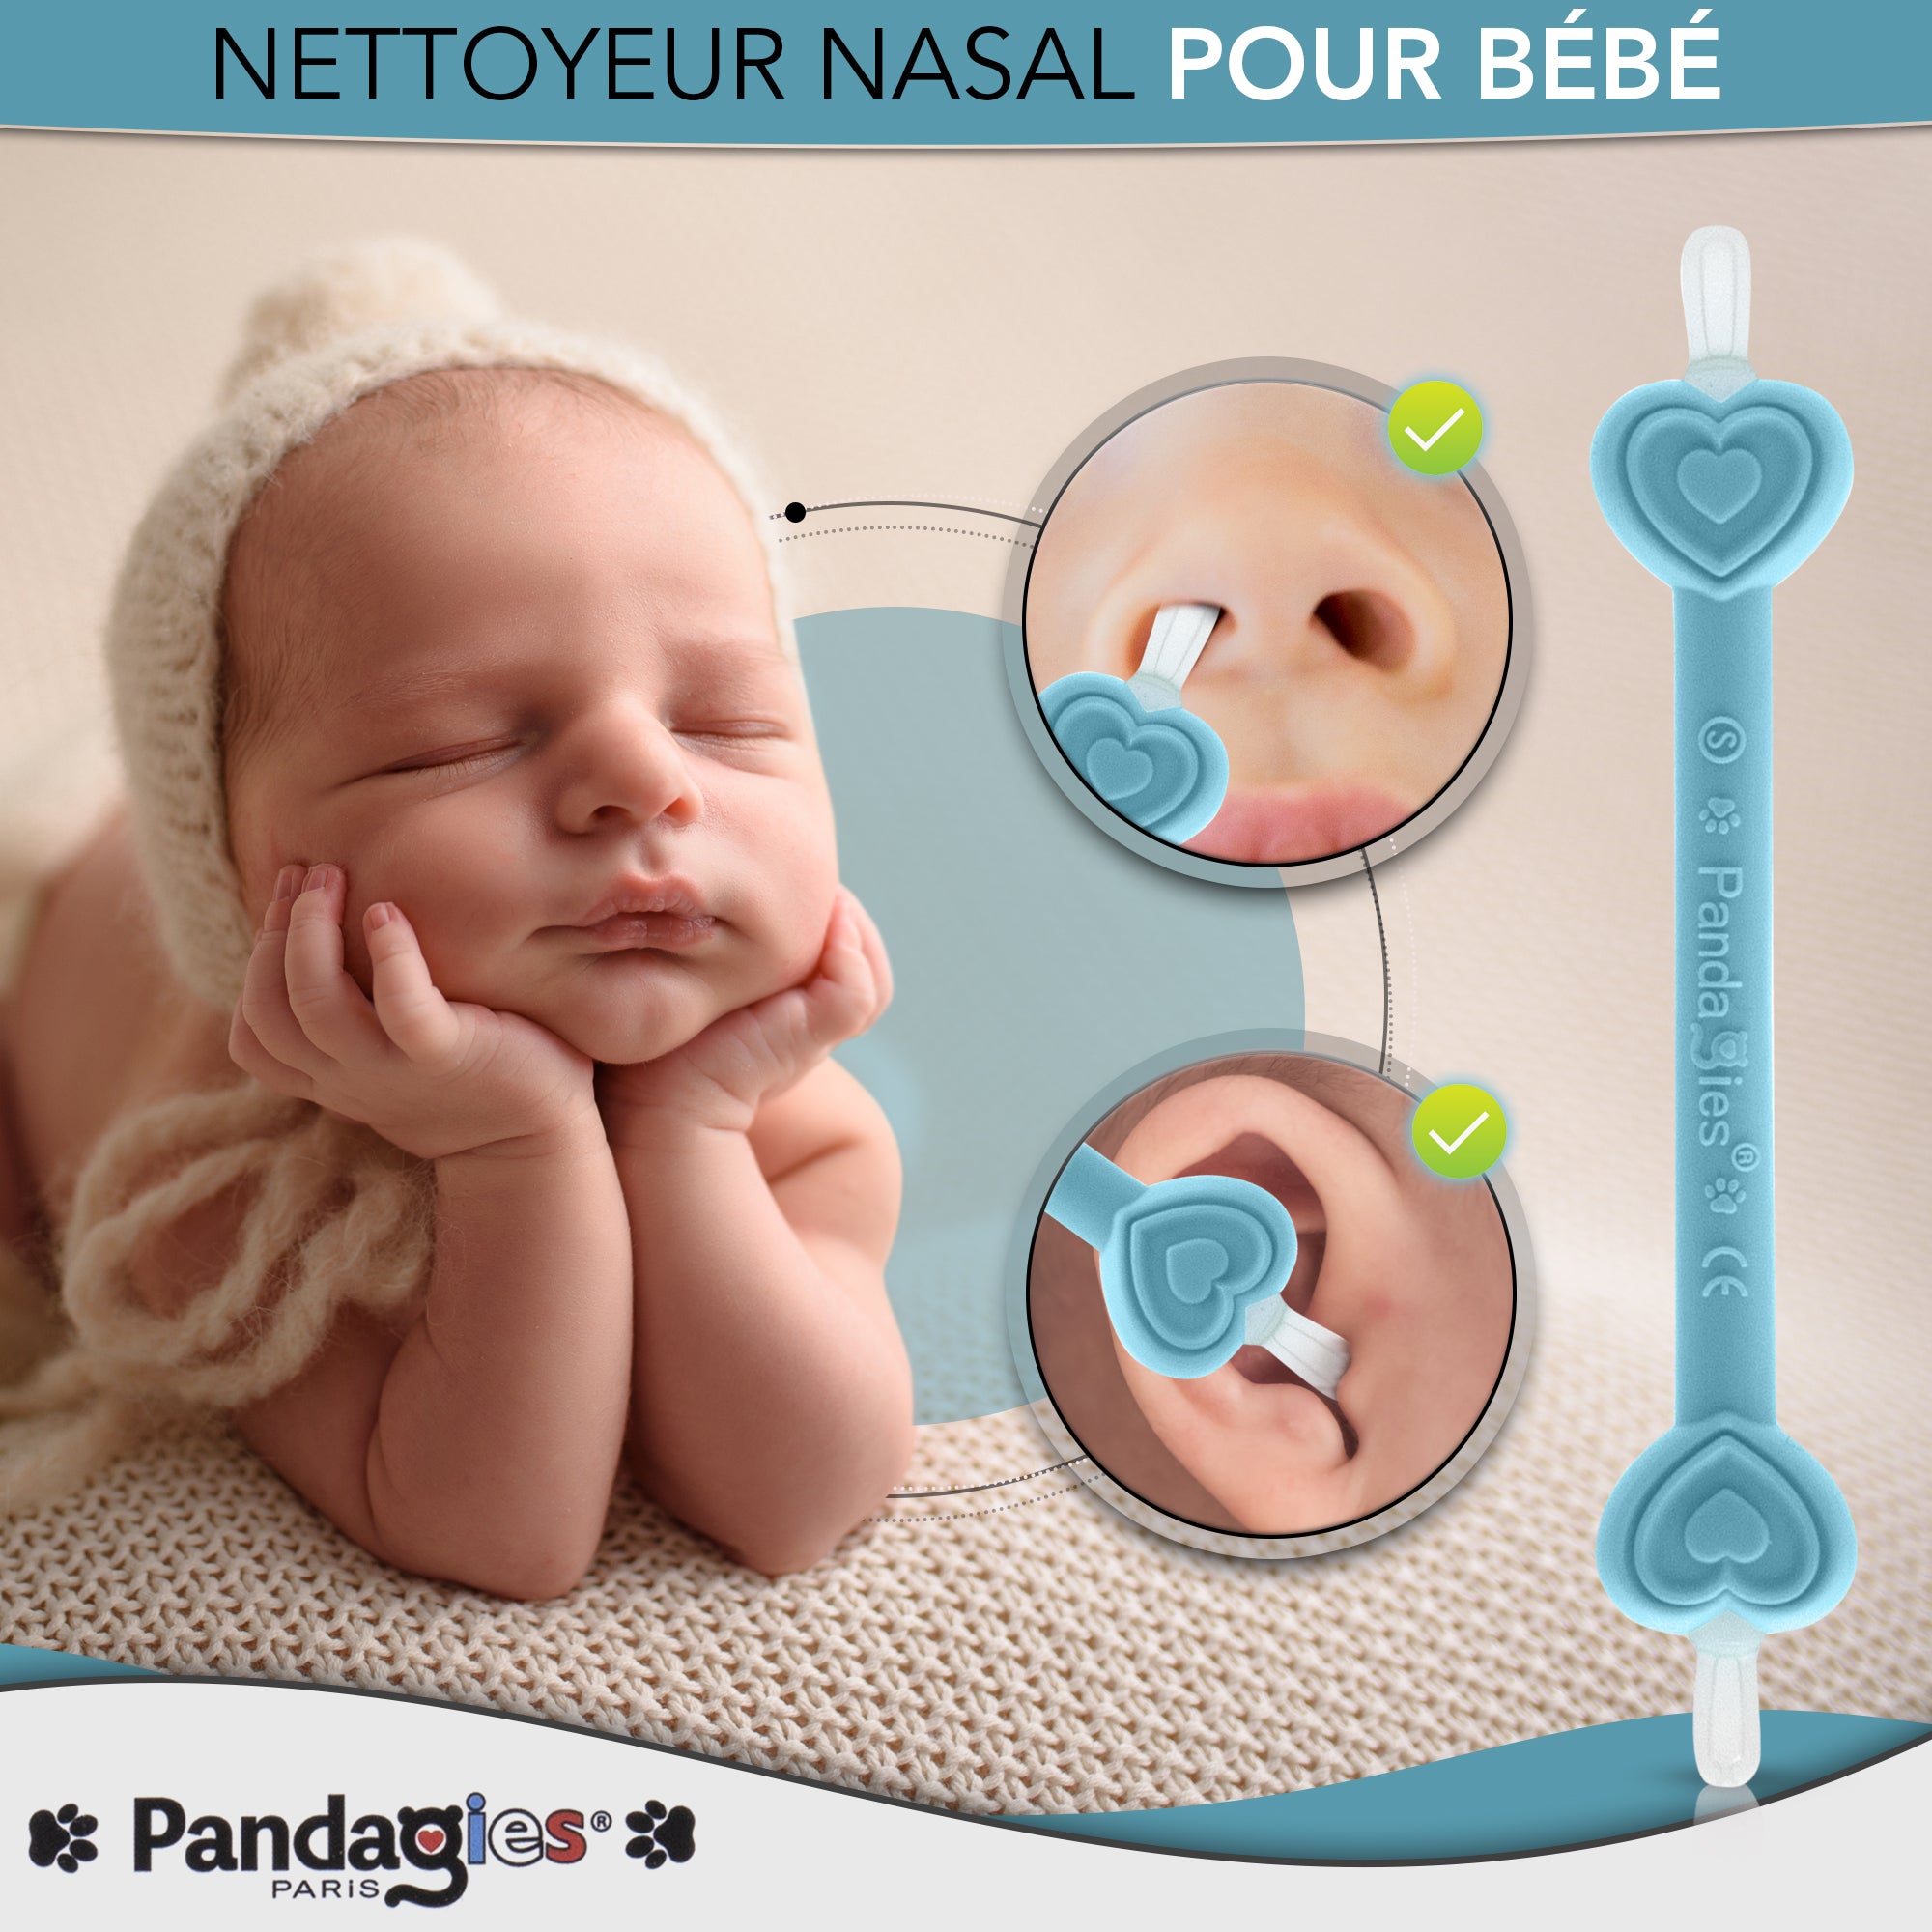 Cure nez et Oreilles bébé INNOVATION FRANCAISE – PandagiesParis